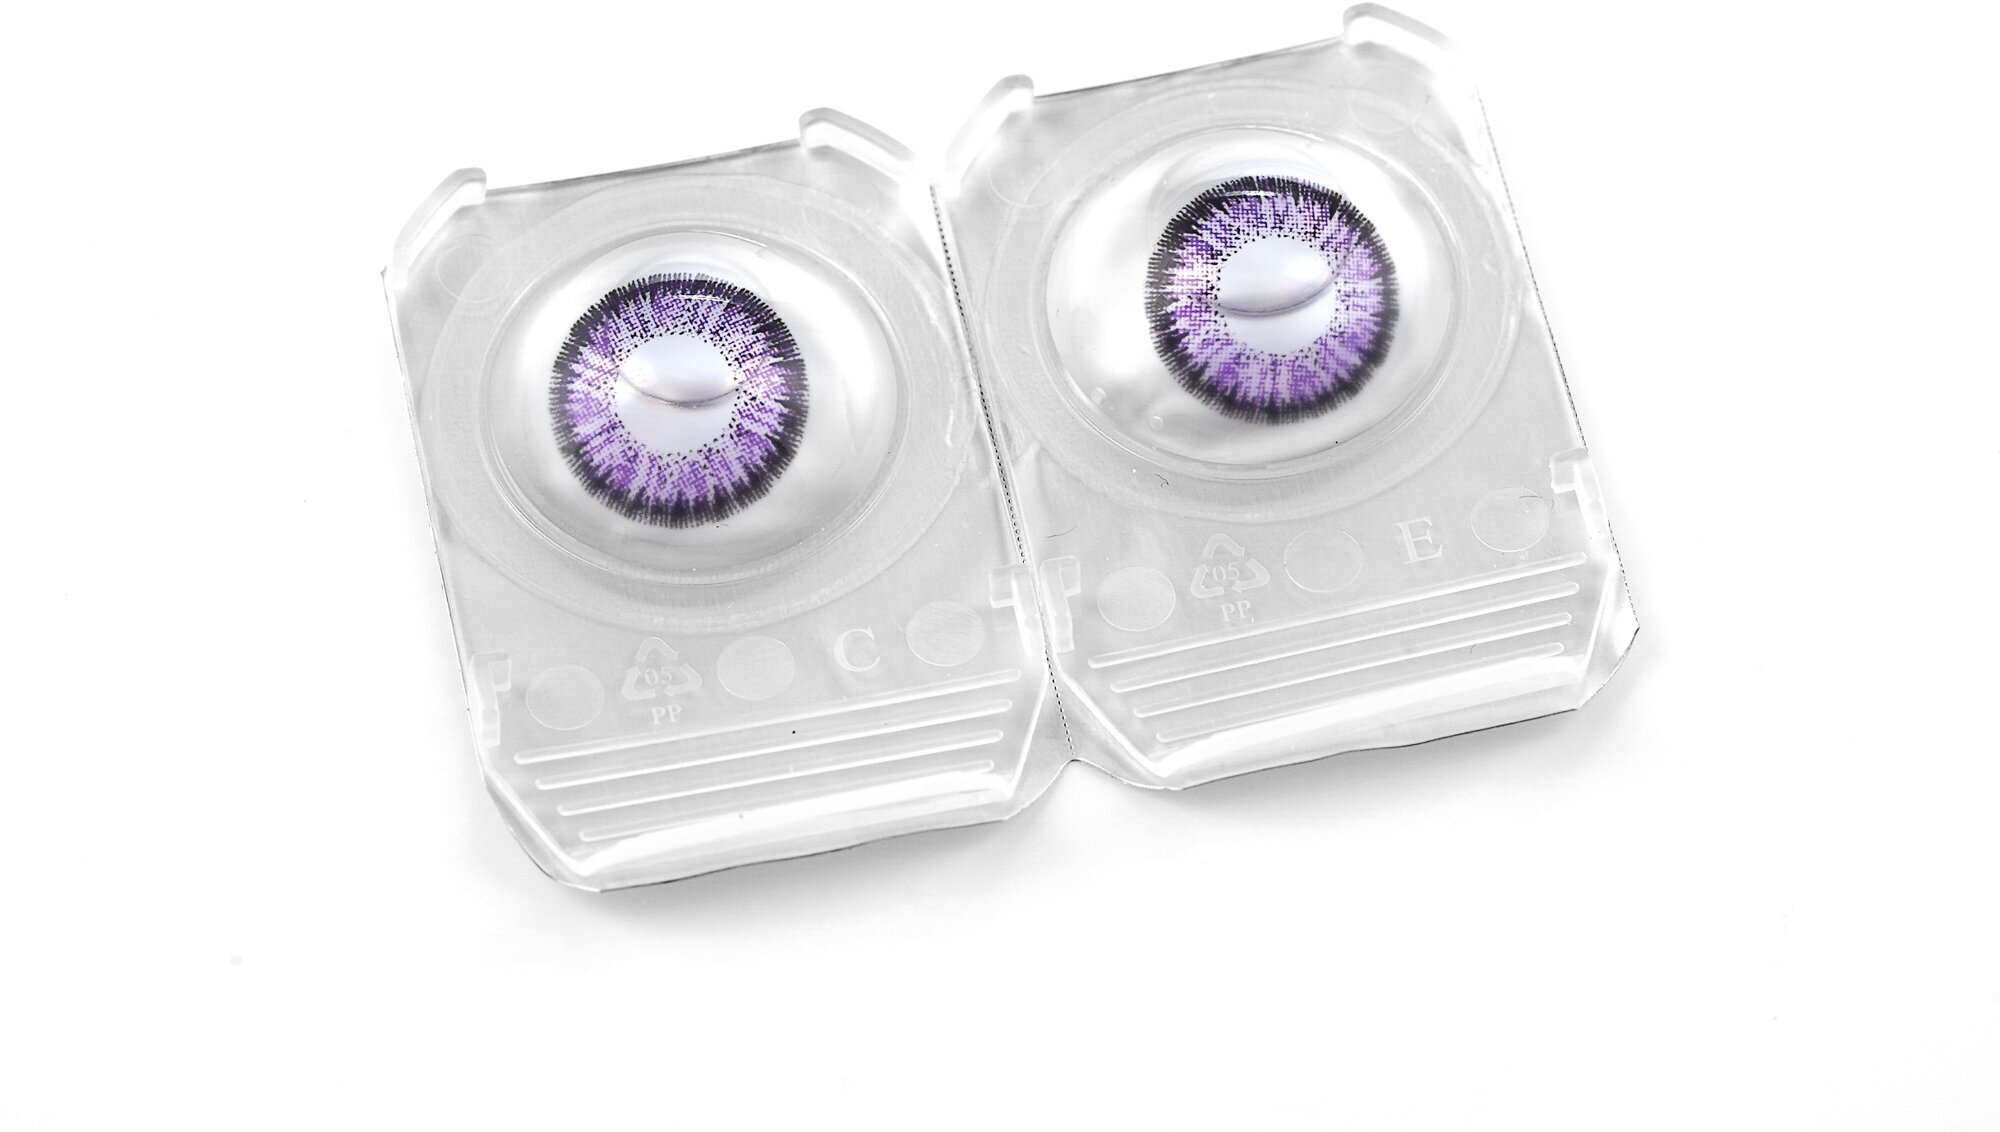 Цветные контактные линзы OKVision Fusion 3 месяца, -8.50 8.6, Violet 2, 2 шт.